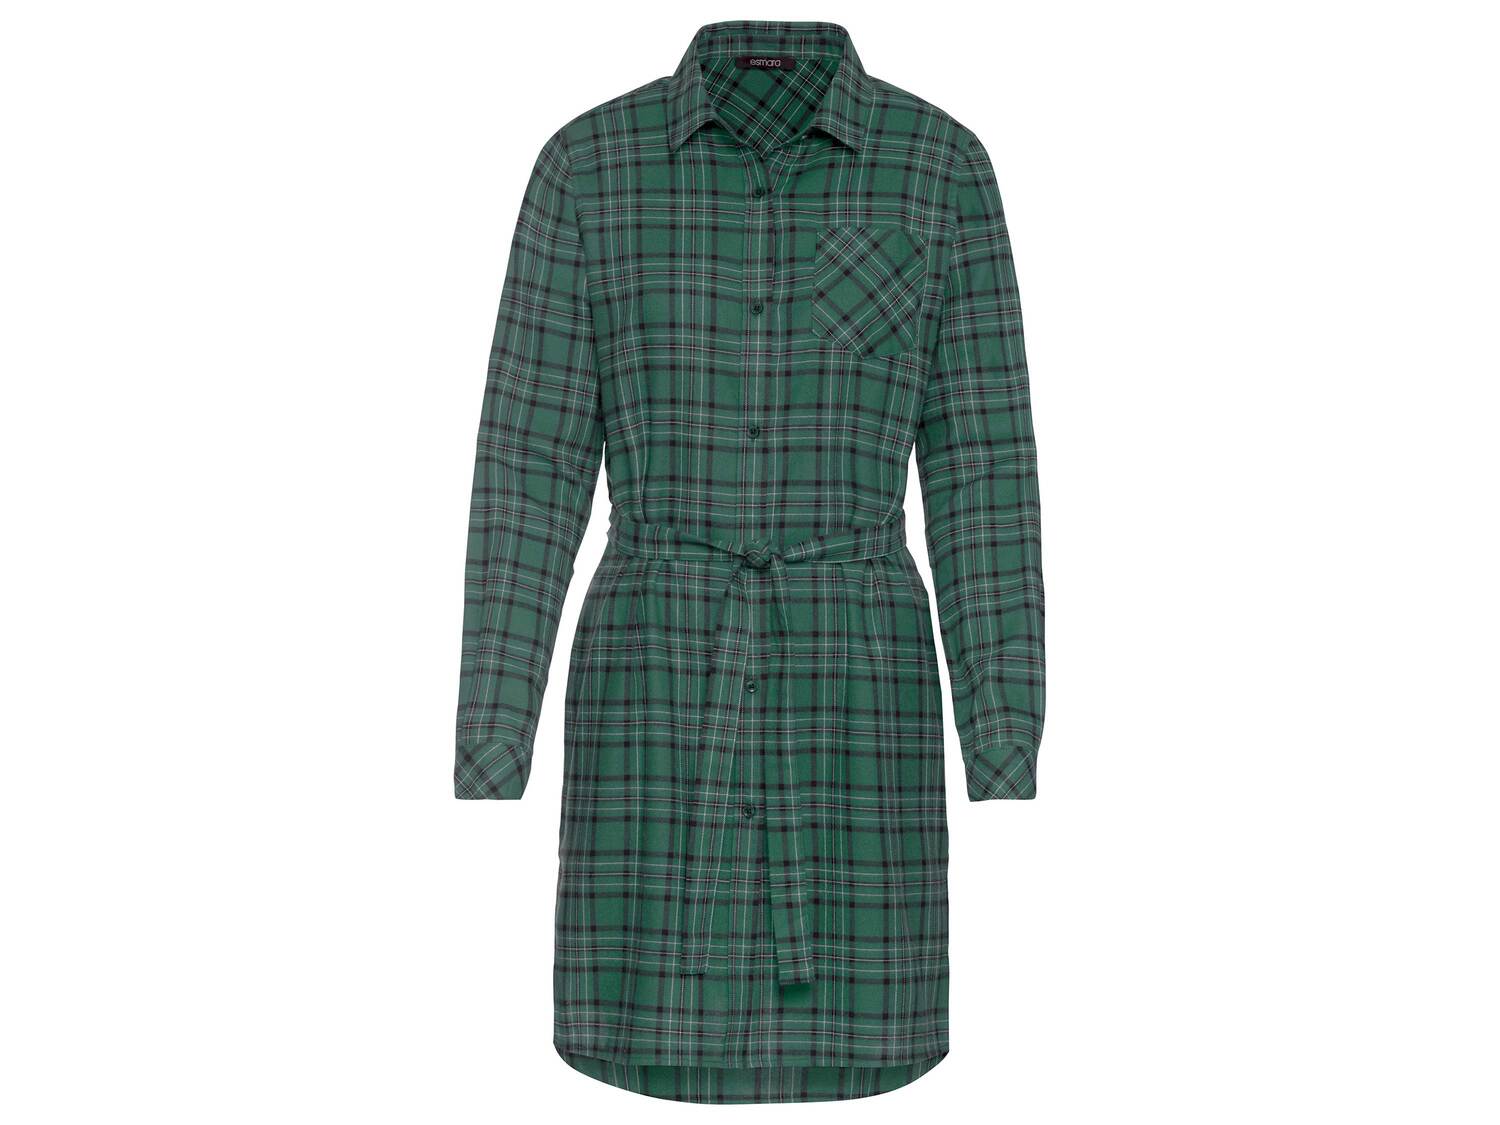 Robe chemise en flanelle Esmara, le prix 8.99 € 
- Du 36 au 48 selon modèle
- ...